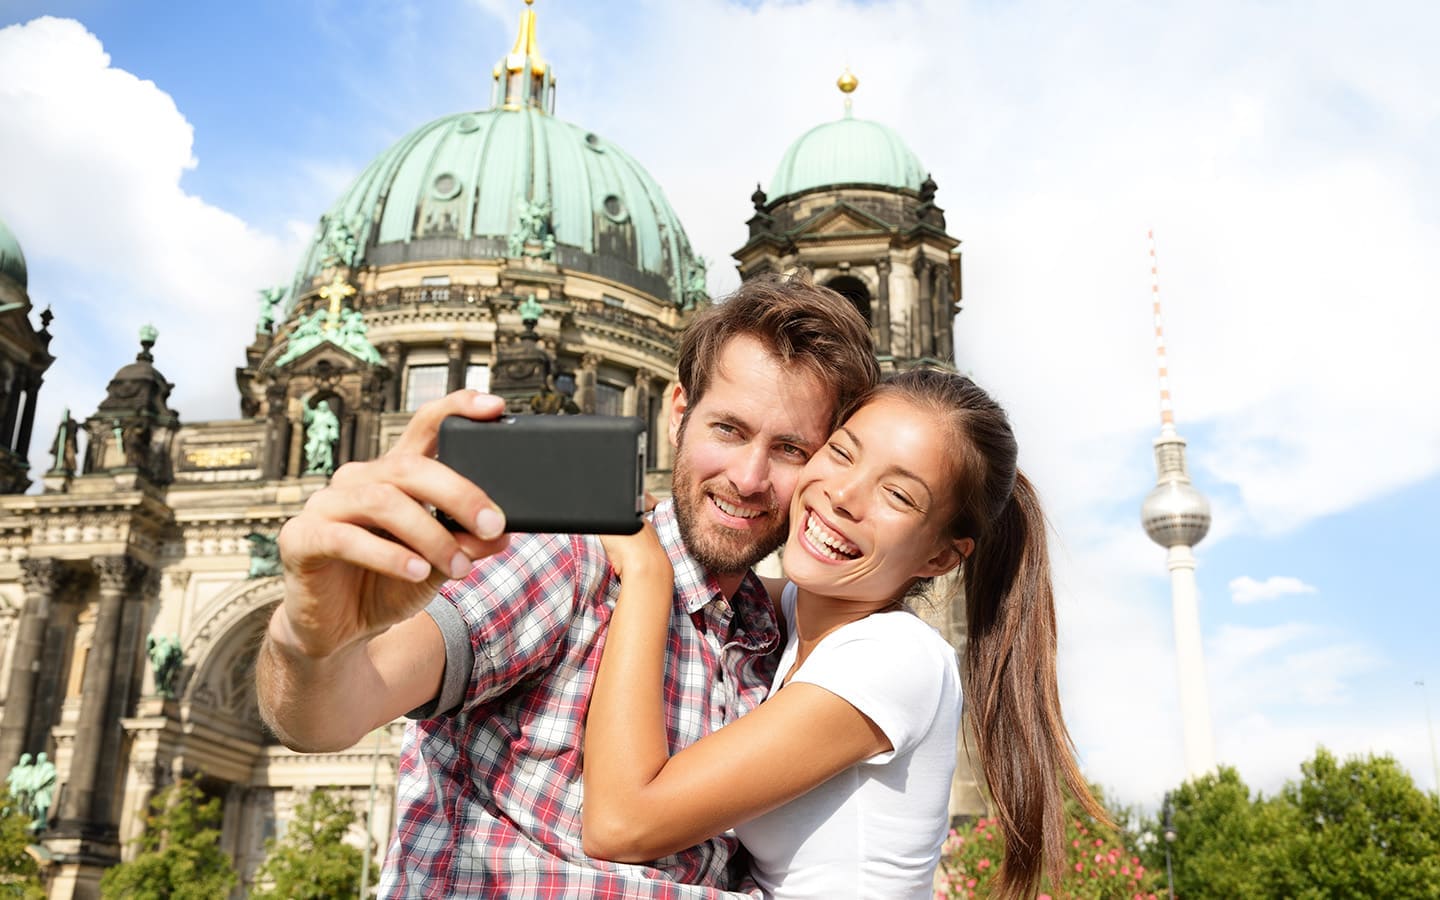 Touristen vor der Berliner Kathedrale, Berliner Dom mit Fernsehturm